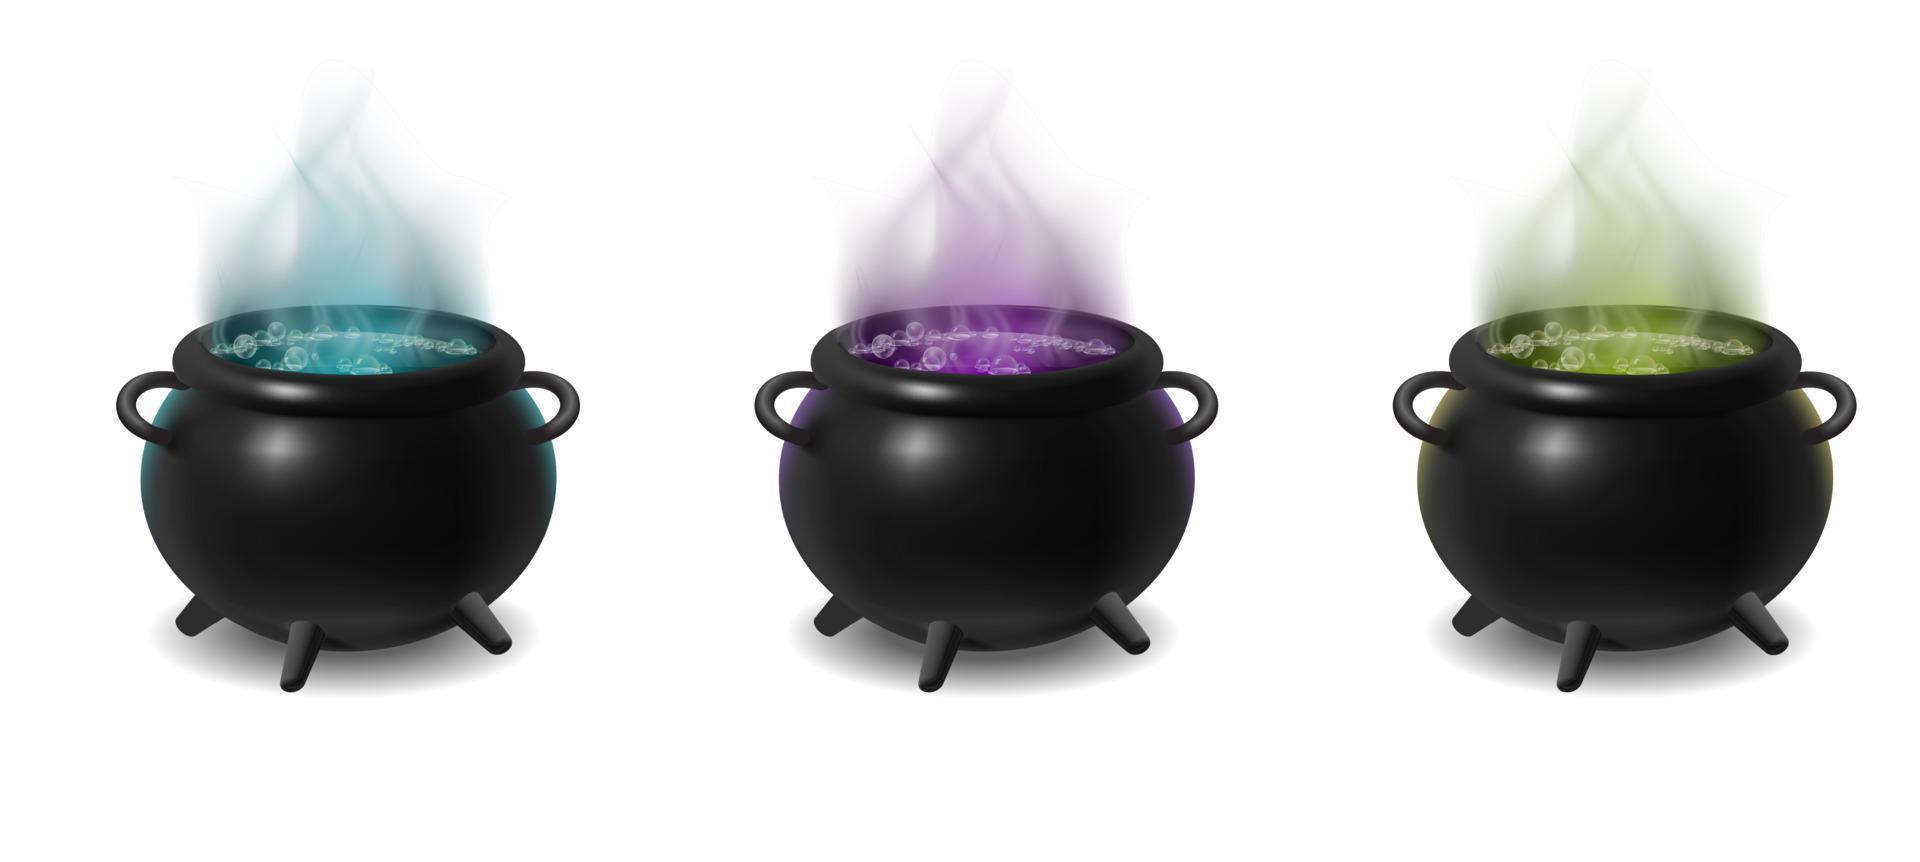 ícone realista 3D. caldeirões de bruxa negra na fogueira com madeira com poção mágica verde, roxa e azul borbulhante dentro. isolado no fundo branco. vetor